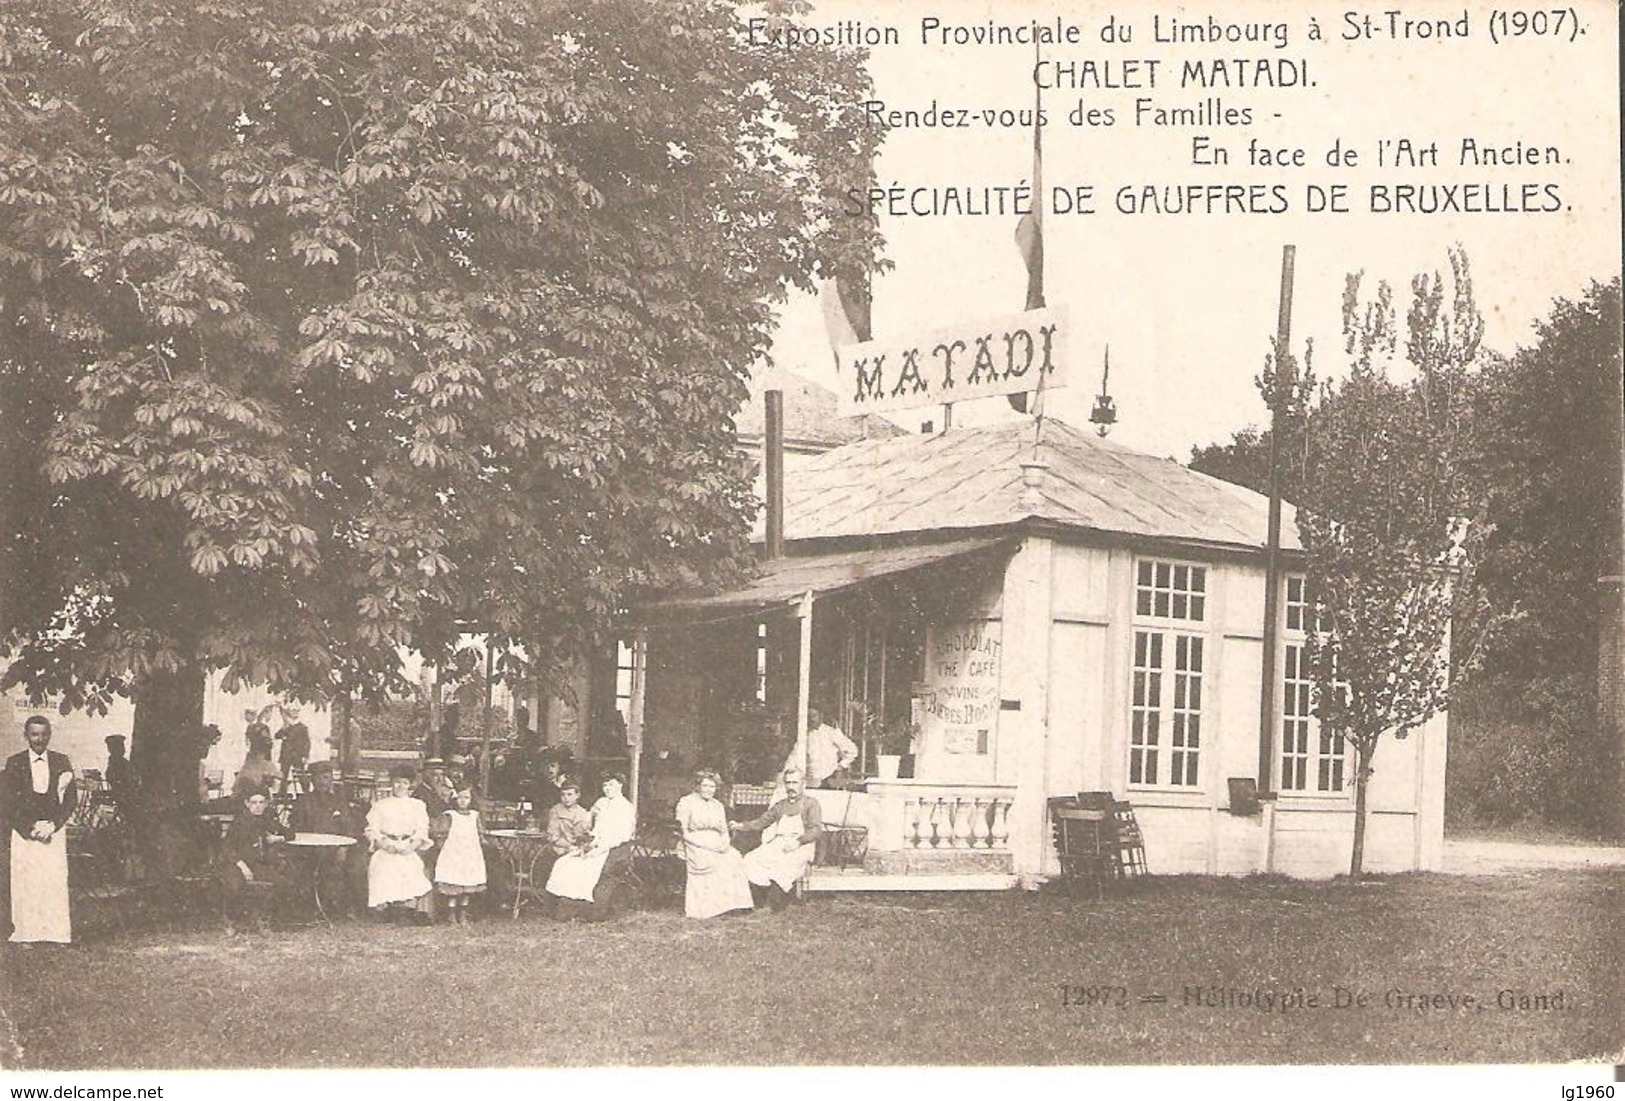 1027) Sint-Truiden - Expo 1907 - Chalet Matadi - Sint-Truiden